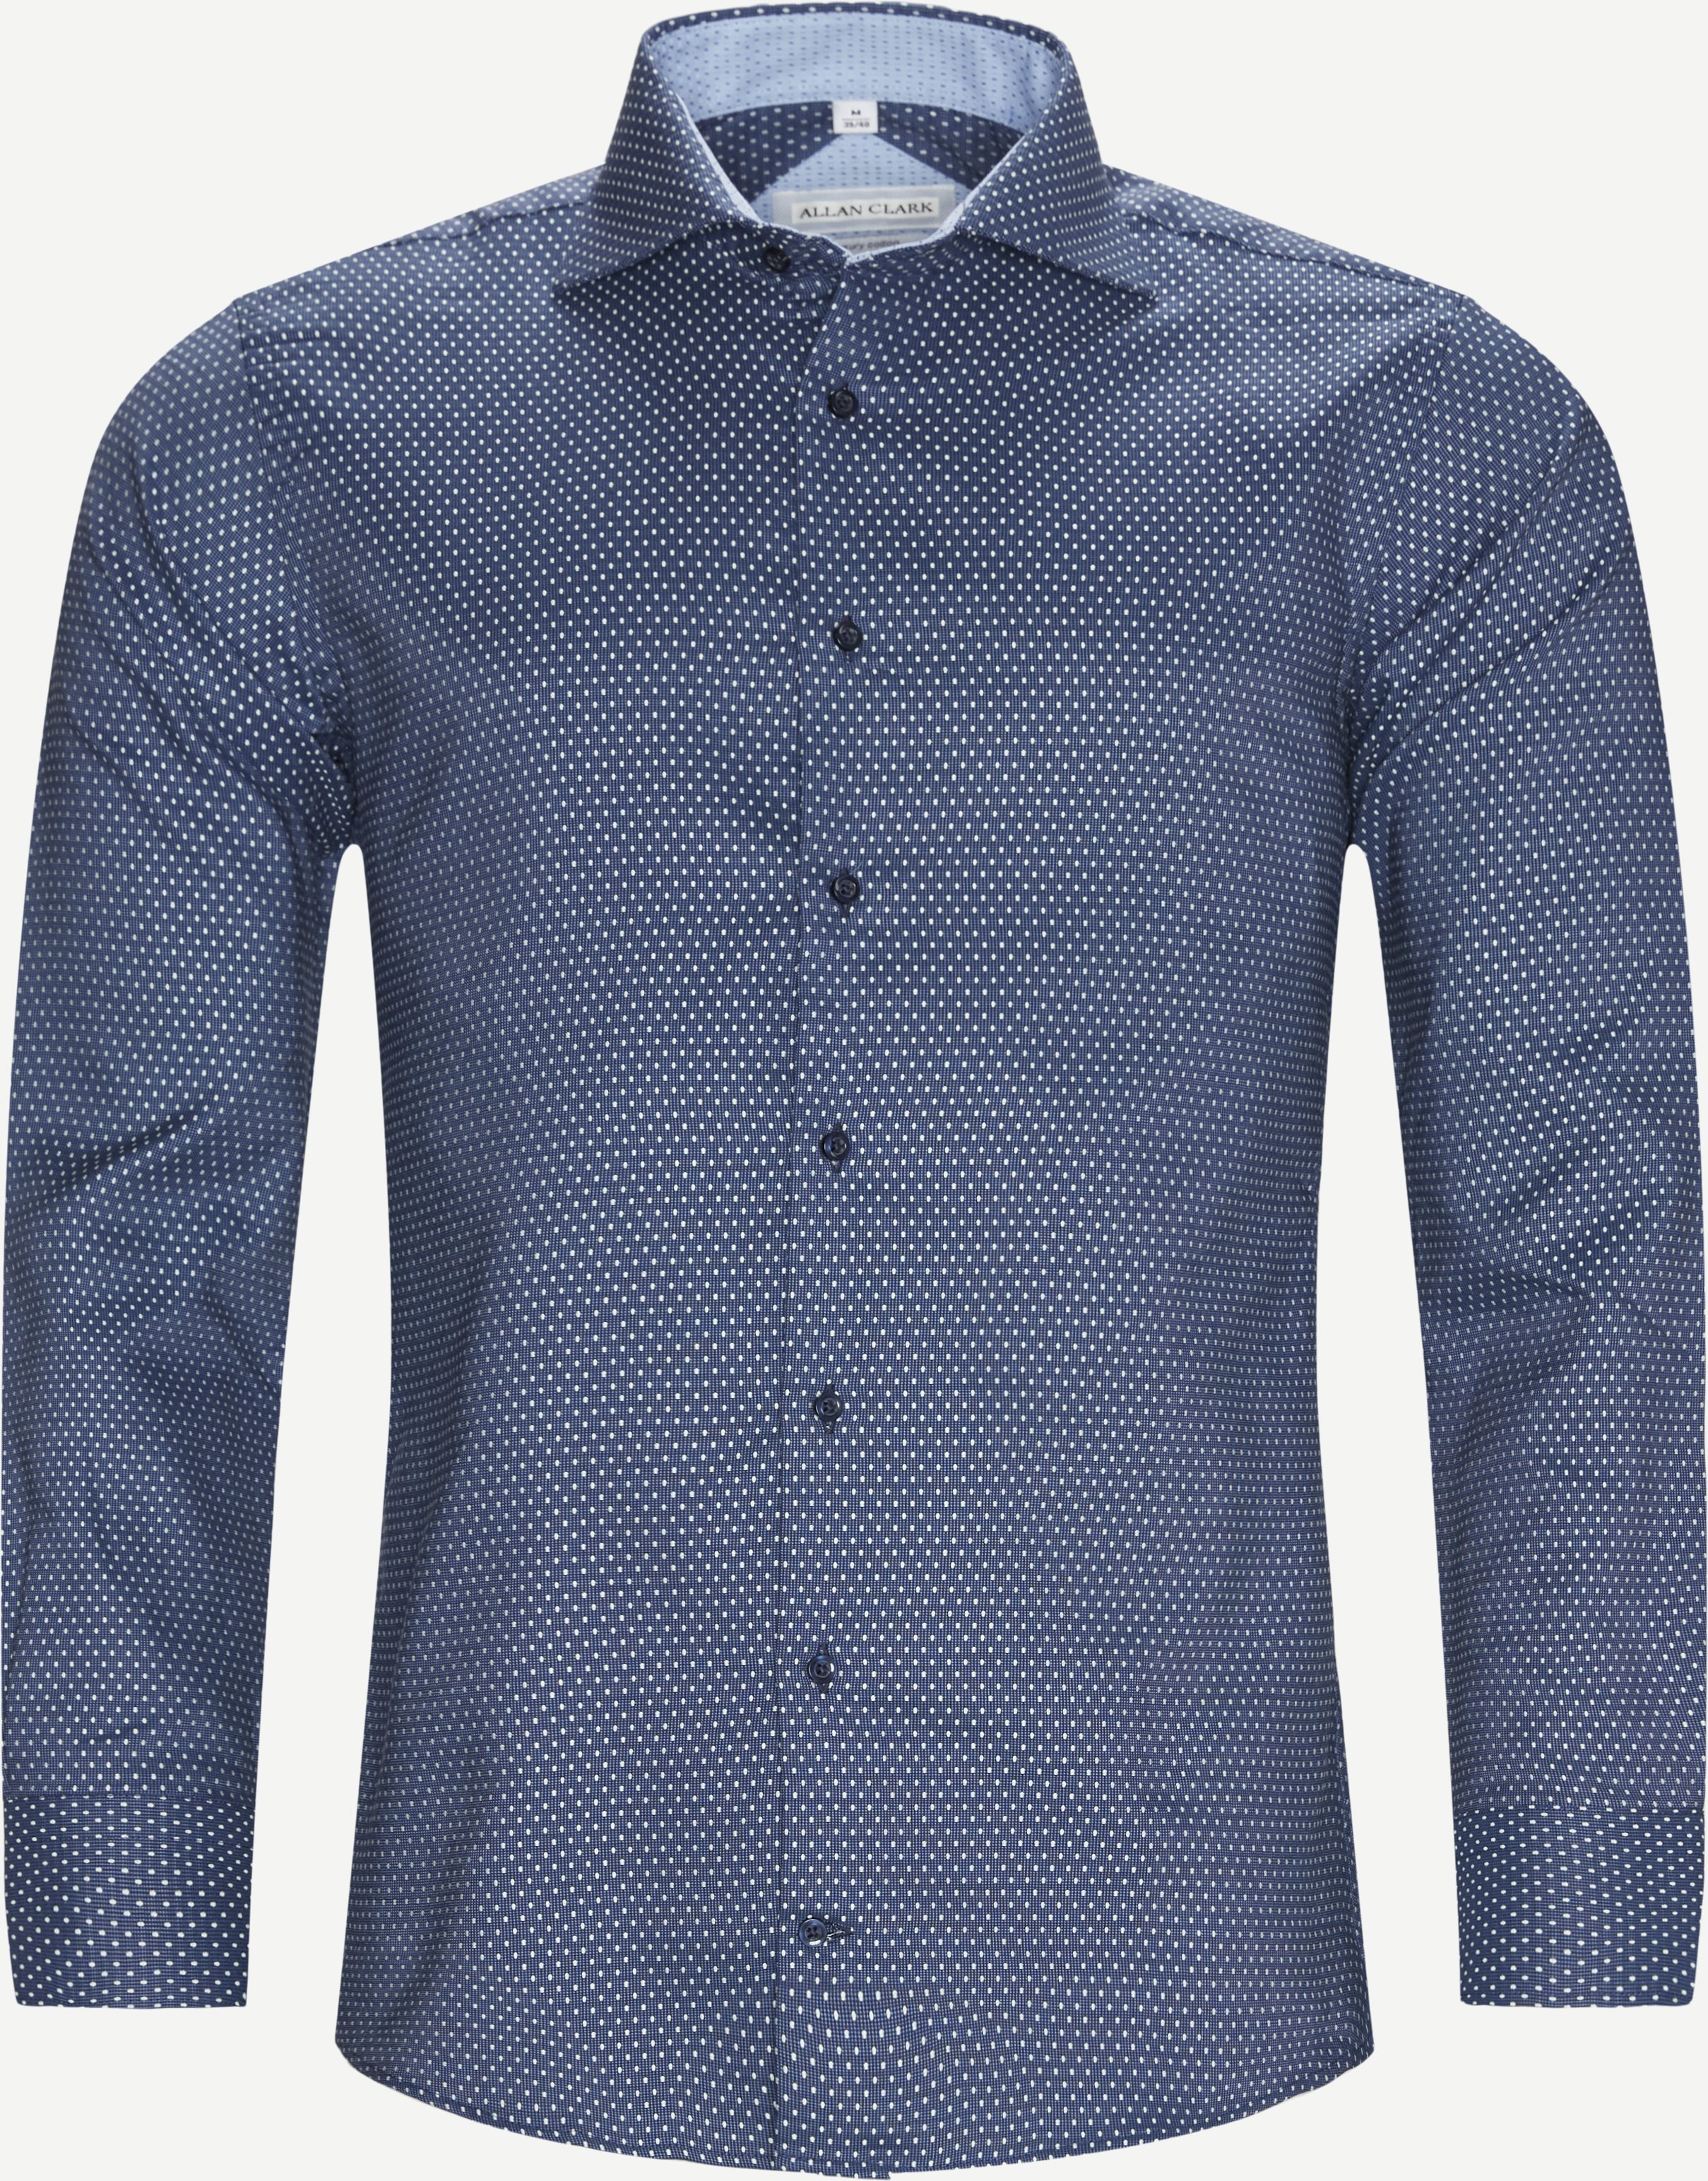 Inverness Skjorte - Skjorter - Blå